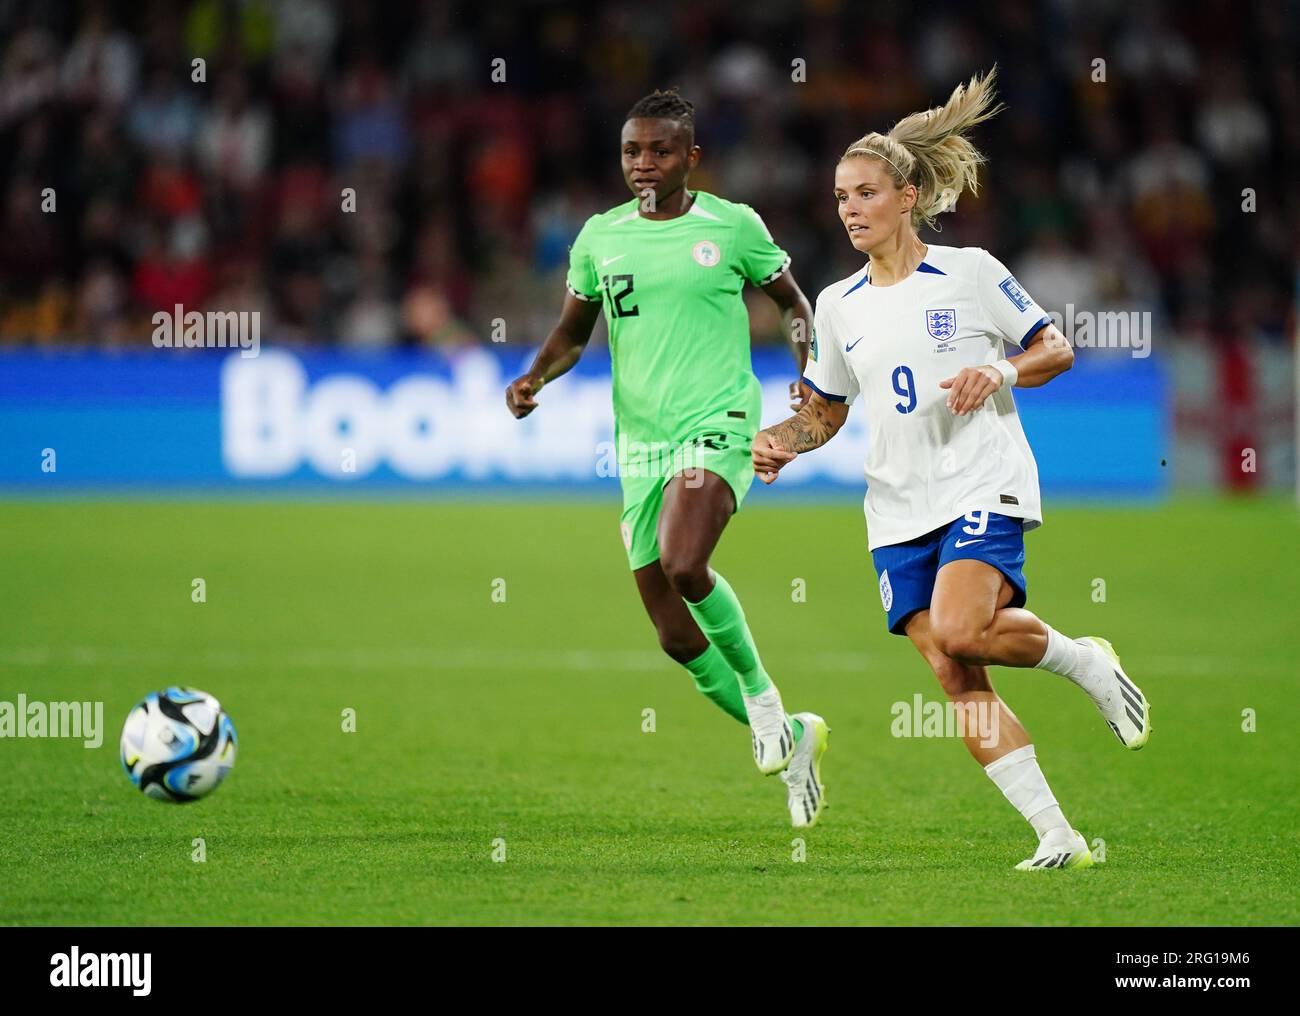 La Nigeria Uchenna Kanu e l'inglese Rachel Daly (a destra) si battono per il pallone durante la Coppa del mondo femminile FIFA, Round of 16 match al Brisbane Stadium, Australia. Data immagine: Lunedì 7 agosto 2023. Foto Stock